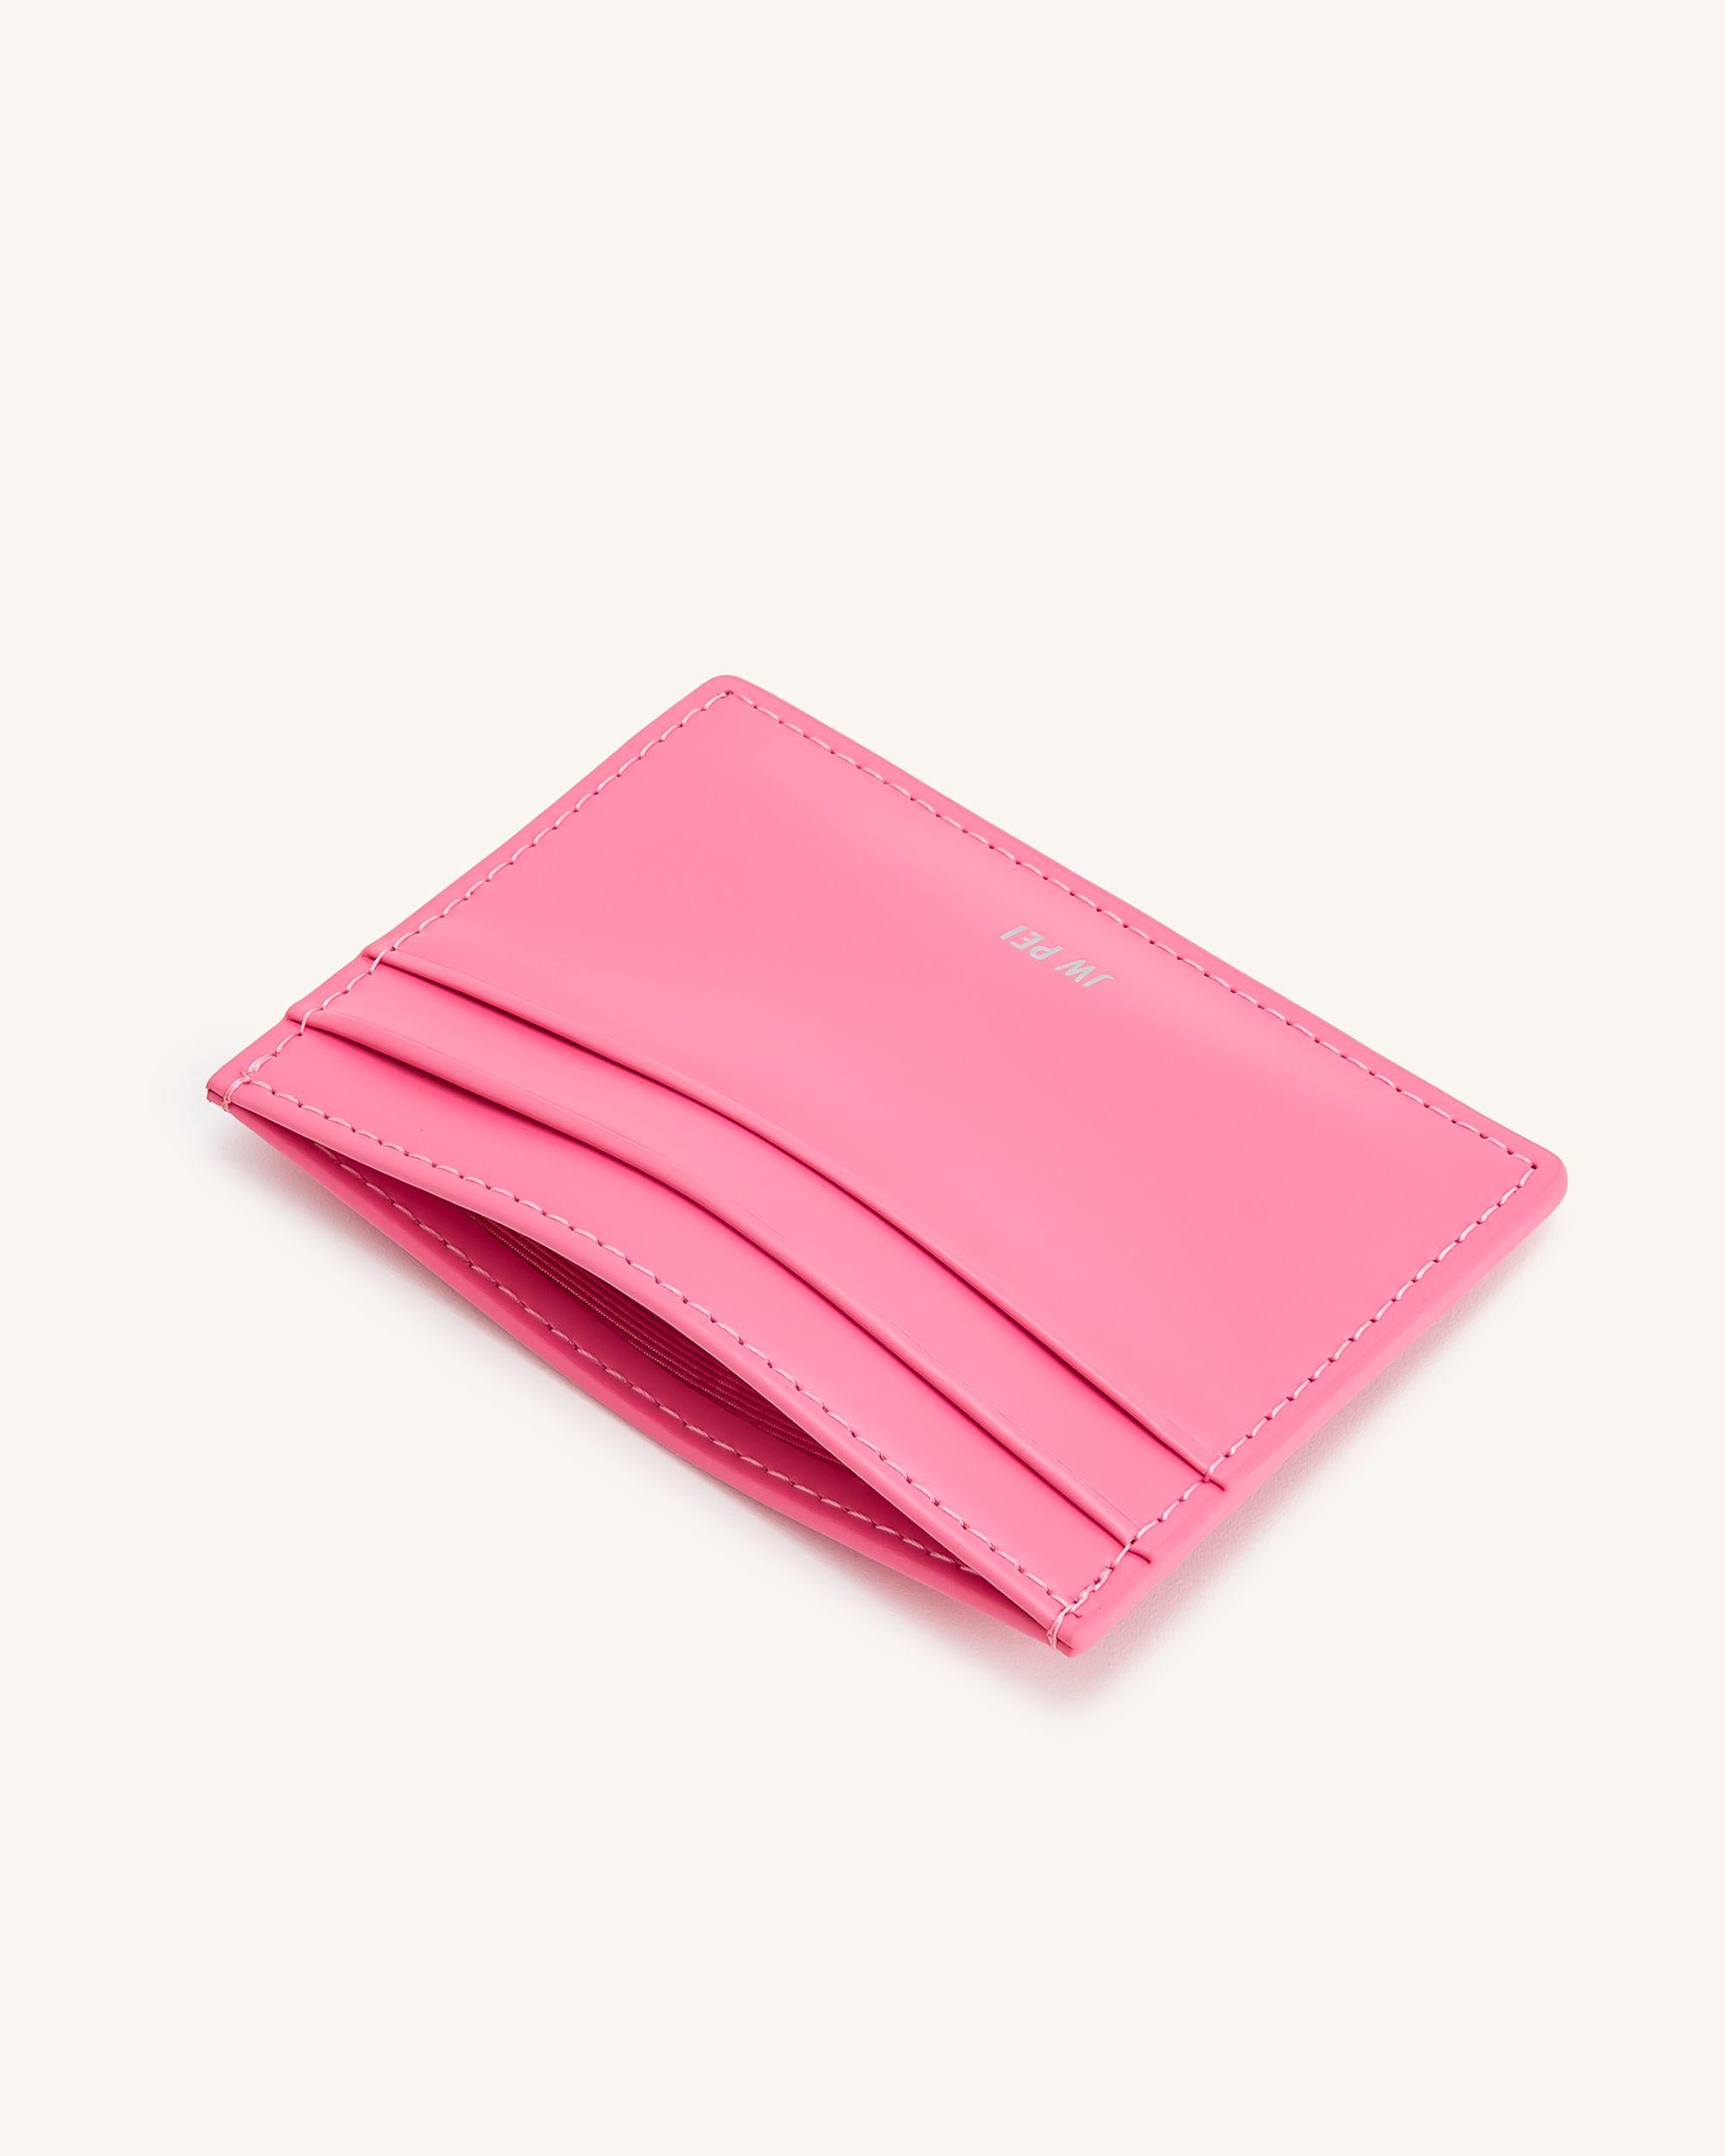 카드 홀더 - 핑크